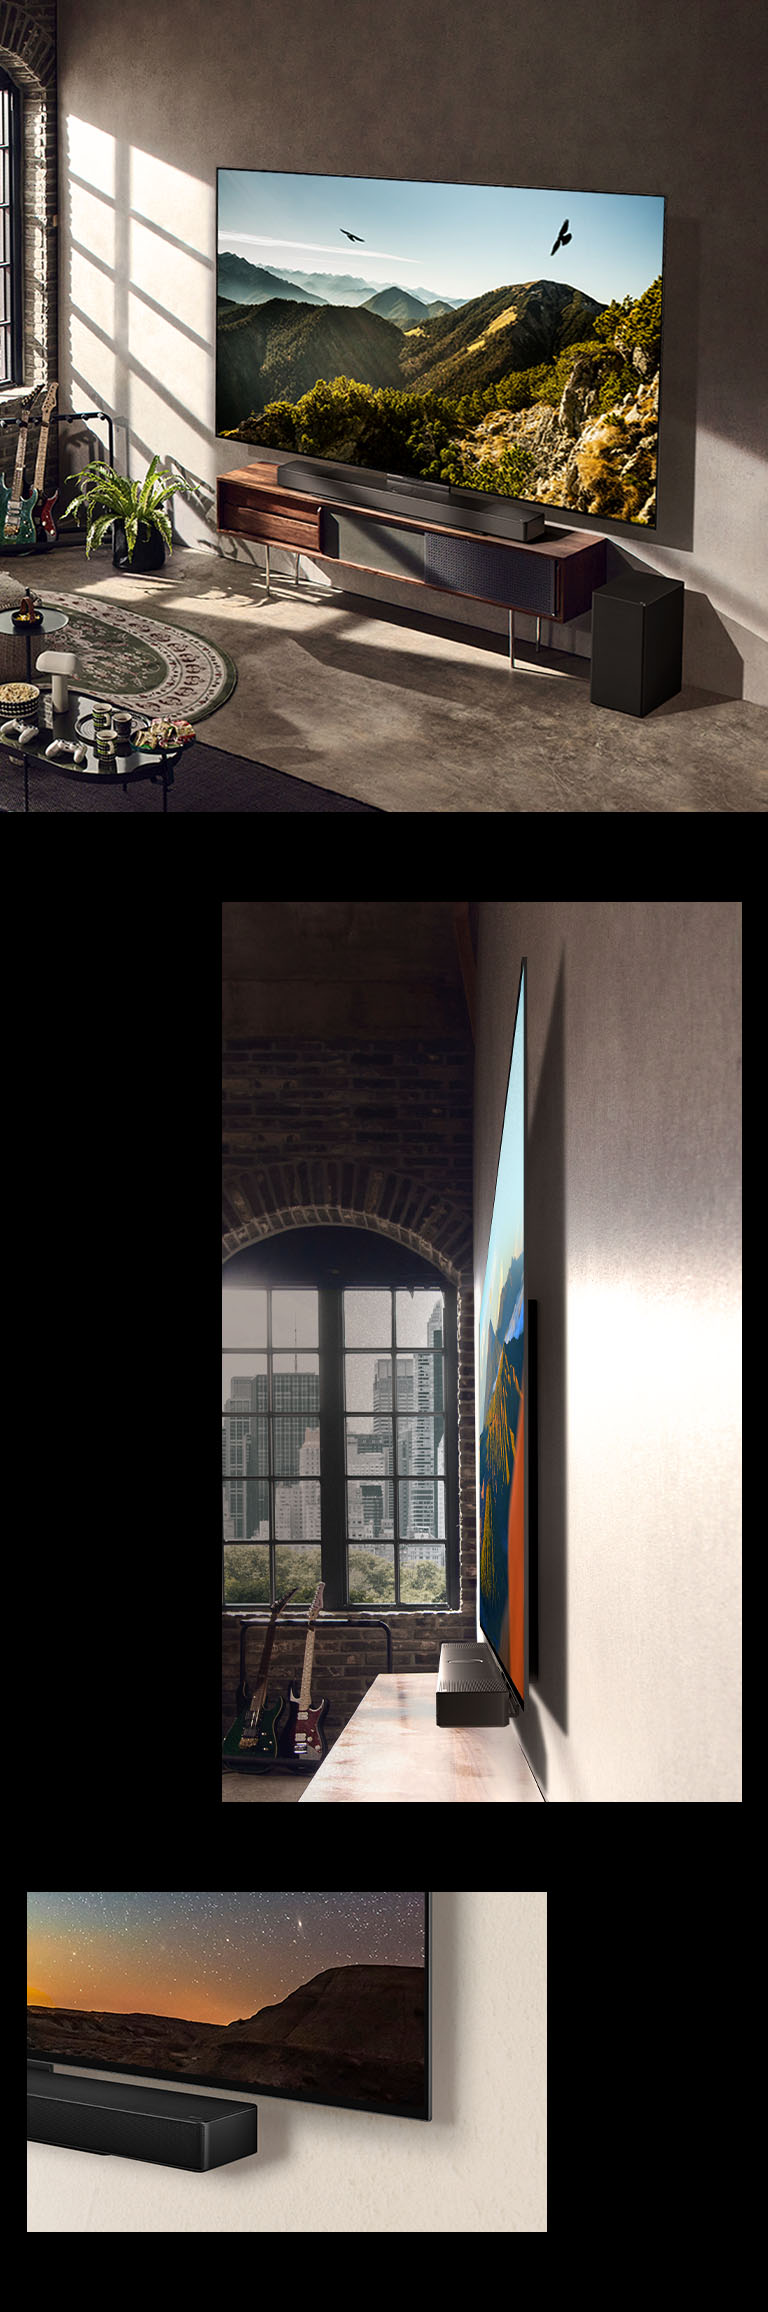 En bild av en LG OLED C3 med en Soundbar på väggen i ett konstnärligt rum. En sidovy av LG OLED C3:s tunna mått framför ett fönster med utsikt över en stad. Nedre hörnet av LG OLED C3:s stativ och Soundbar.